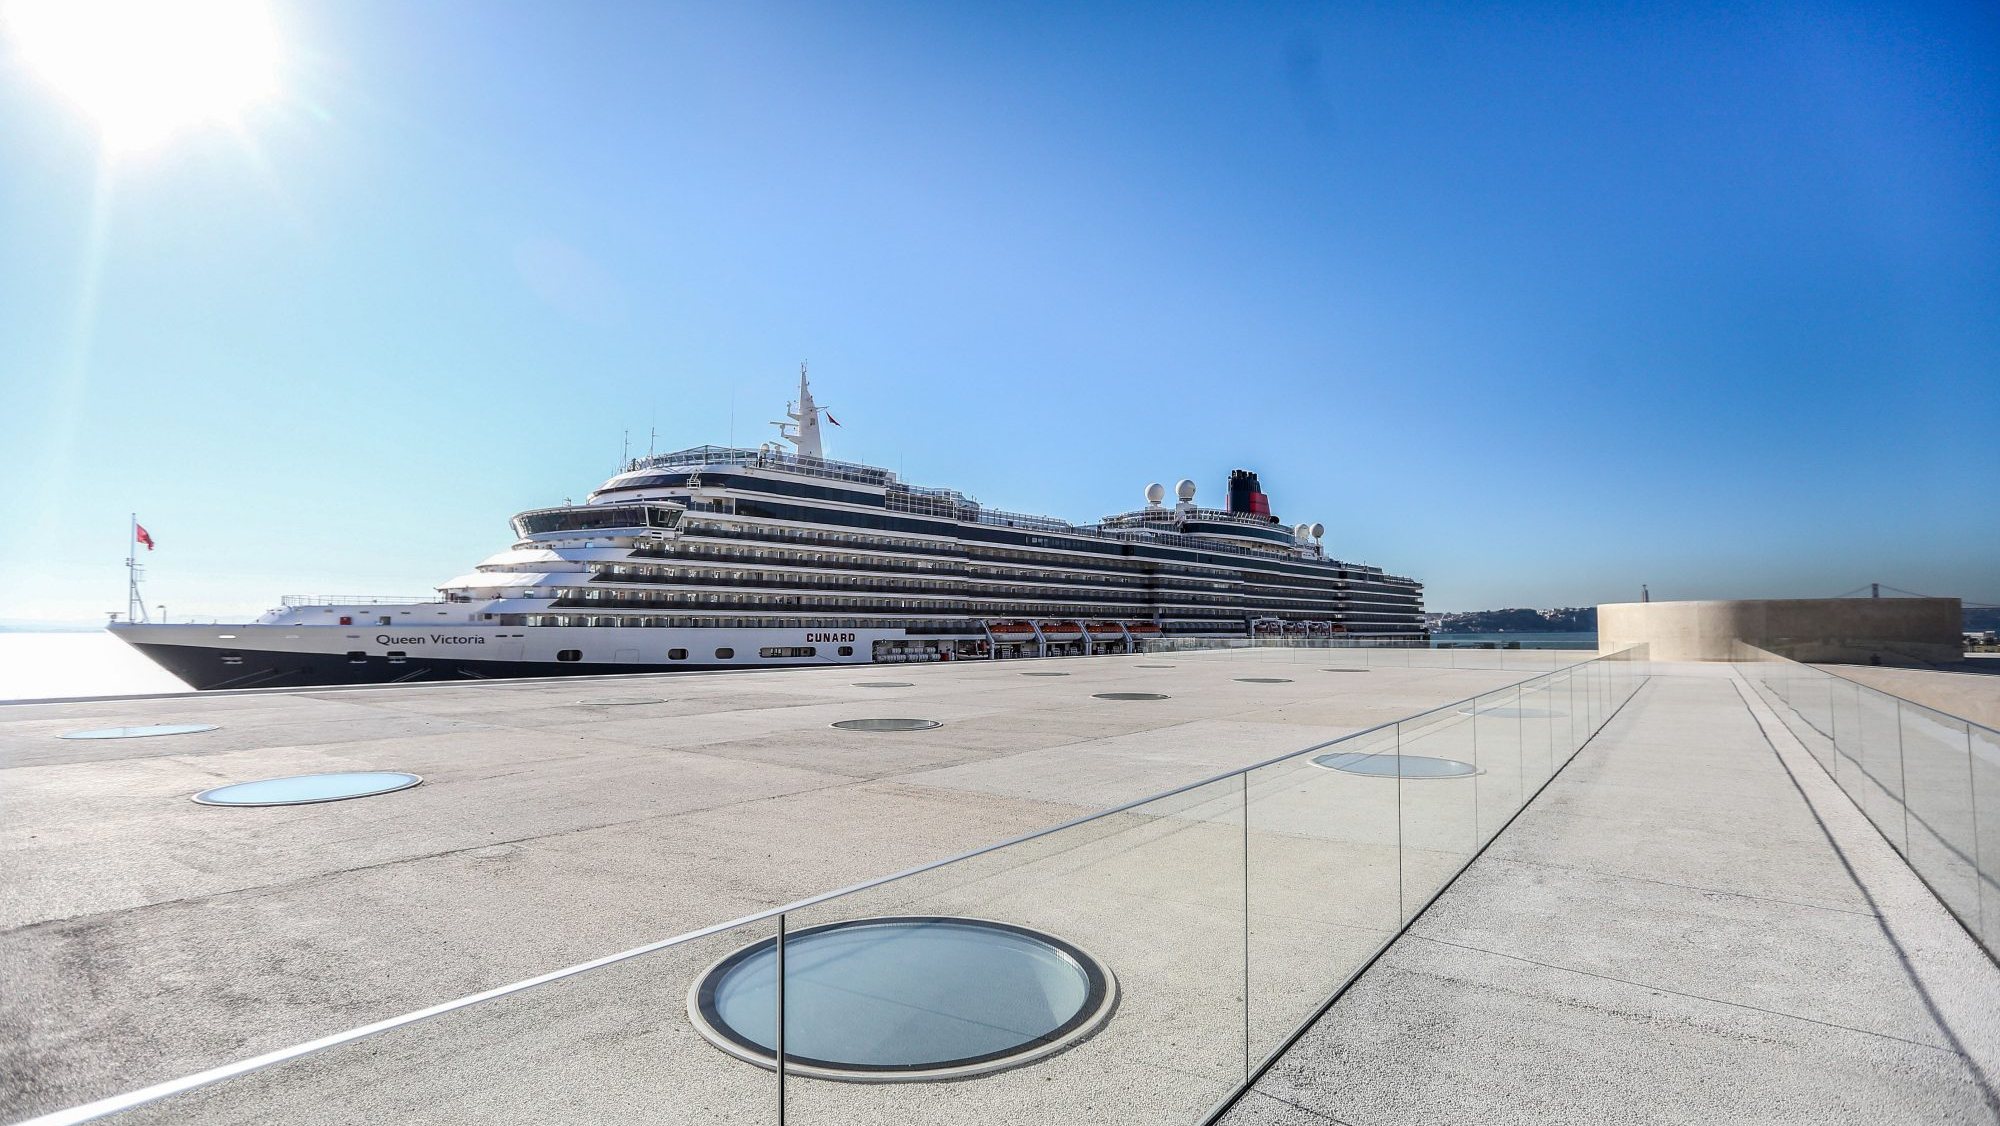 O Terminal de Cruzeiros de Lisboa foi distinguido como o melhor da Europa, uma distinção atribuída pelo World Cruise Awards, em 2022.